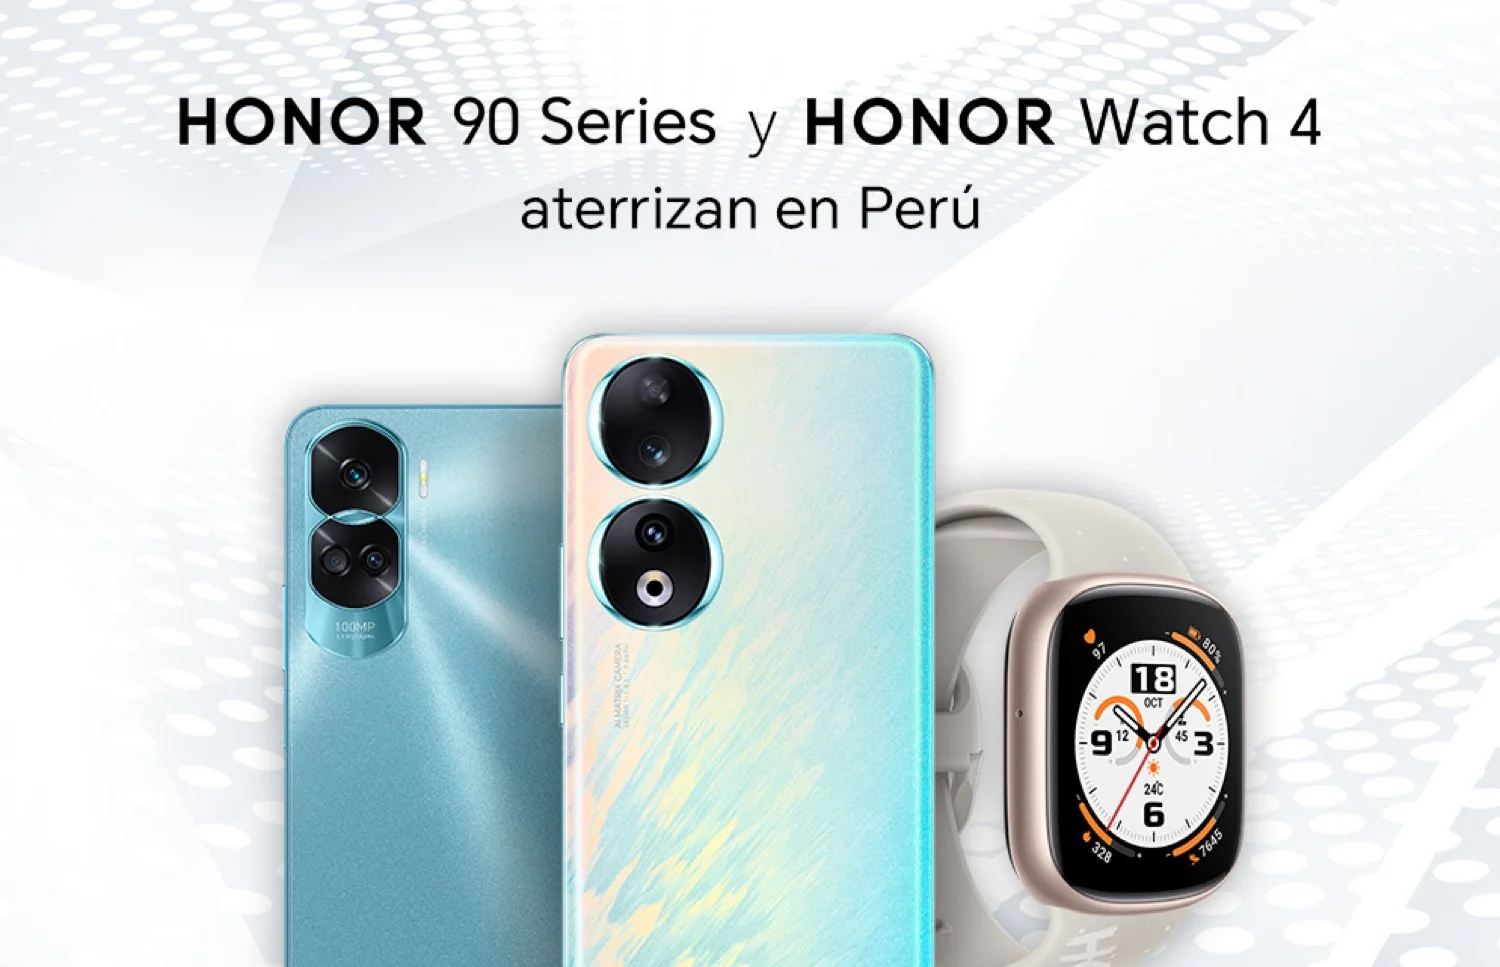 HONOR lanza la Serie HONOR 90 y HONOR Watch 4 en Perú